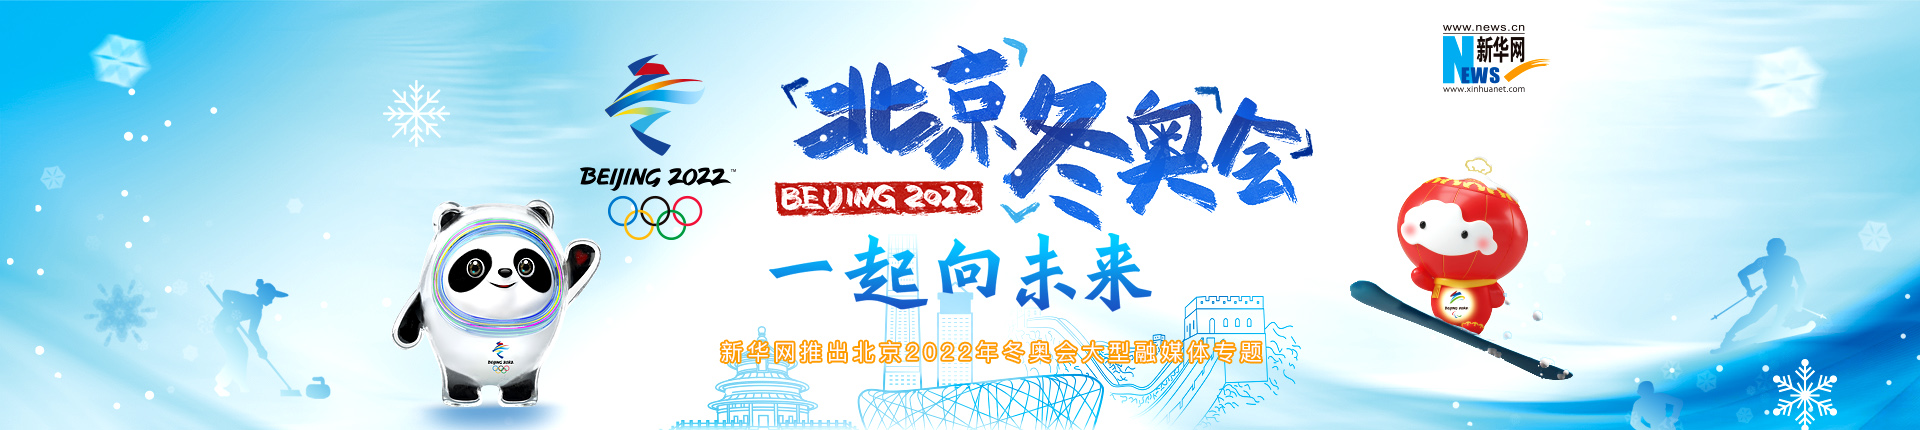 新华网推出北京2022年冬奥会大型融媒体专题